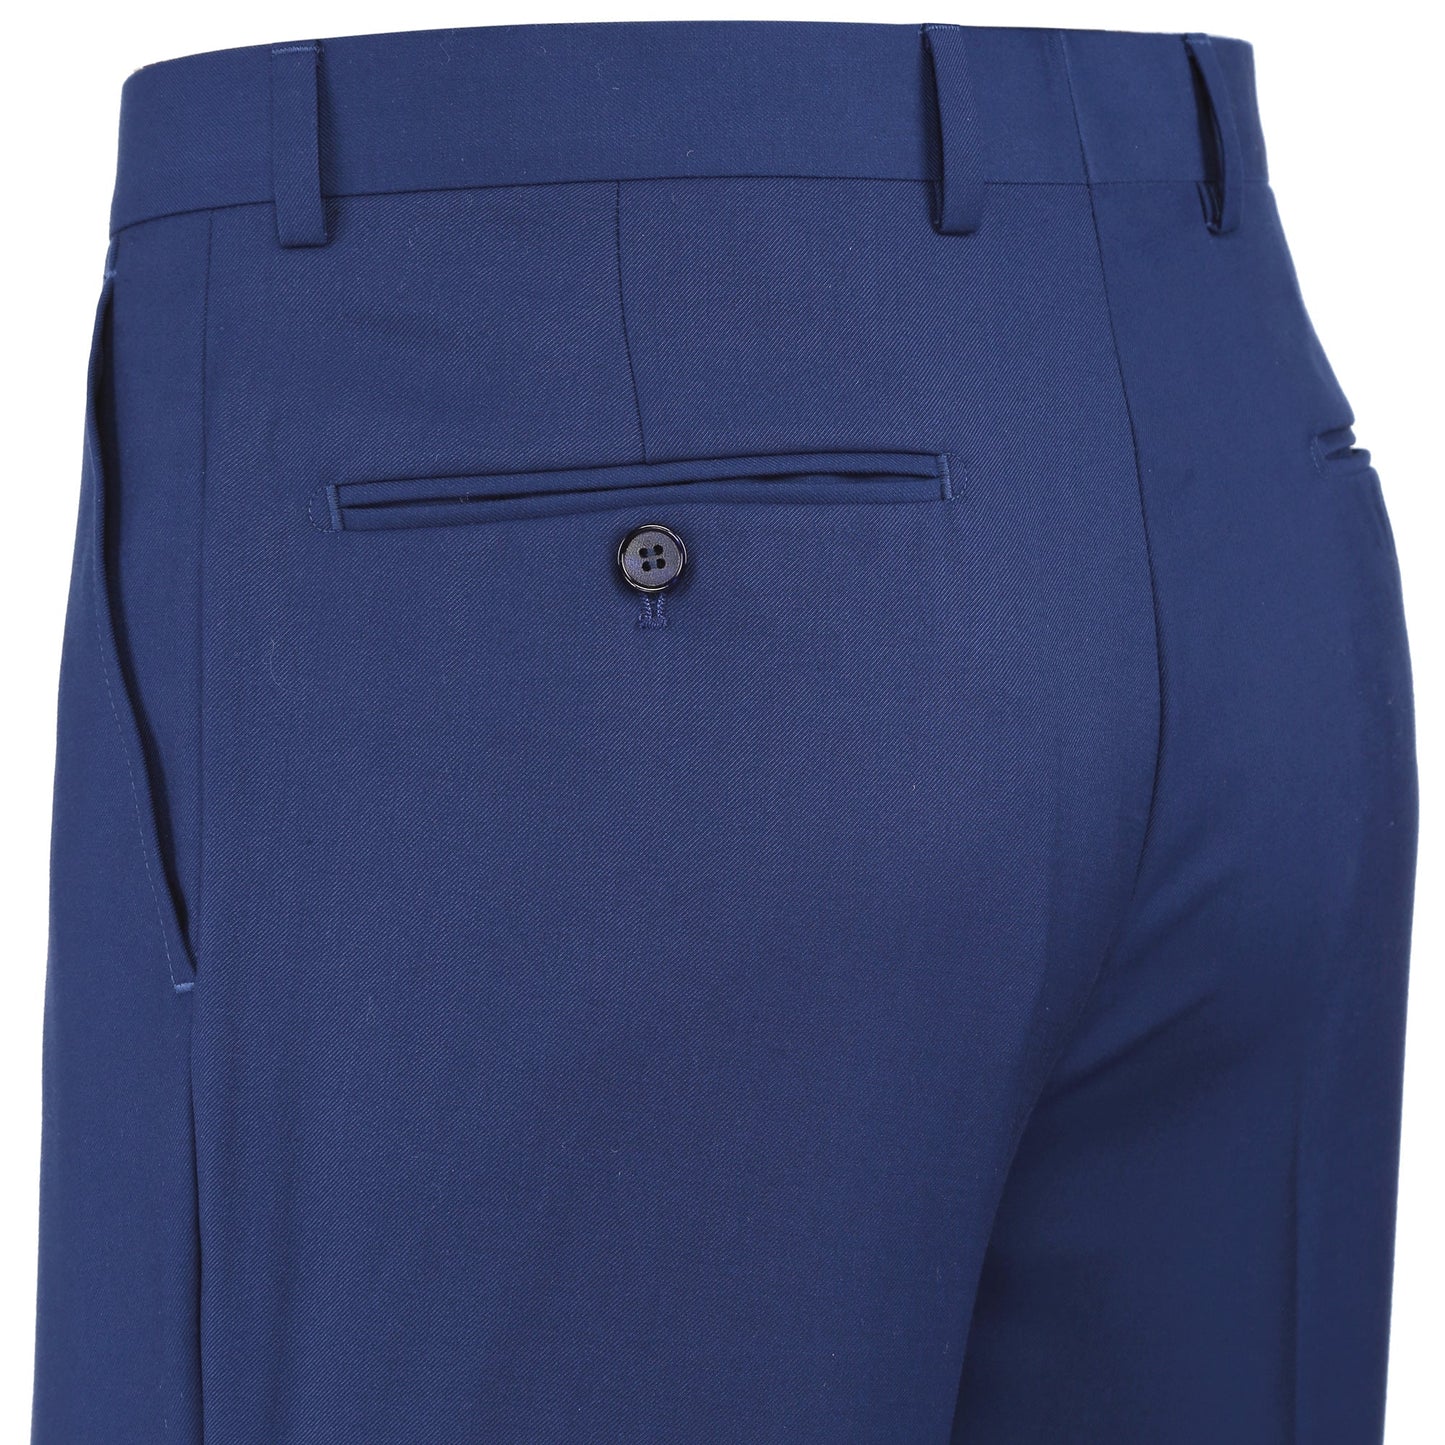 201-20 Men's Flat Front Suit Separate Blue Pants